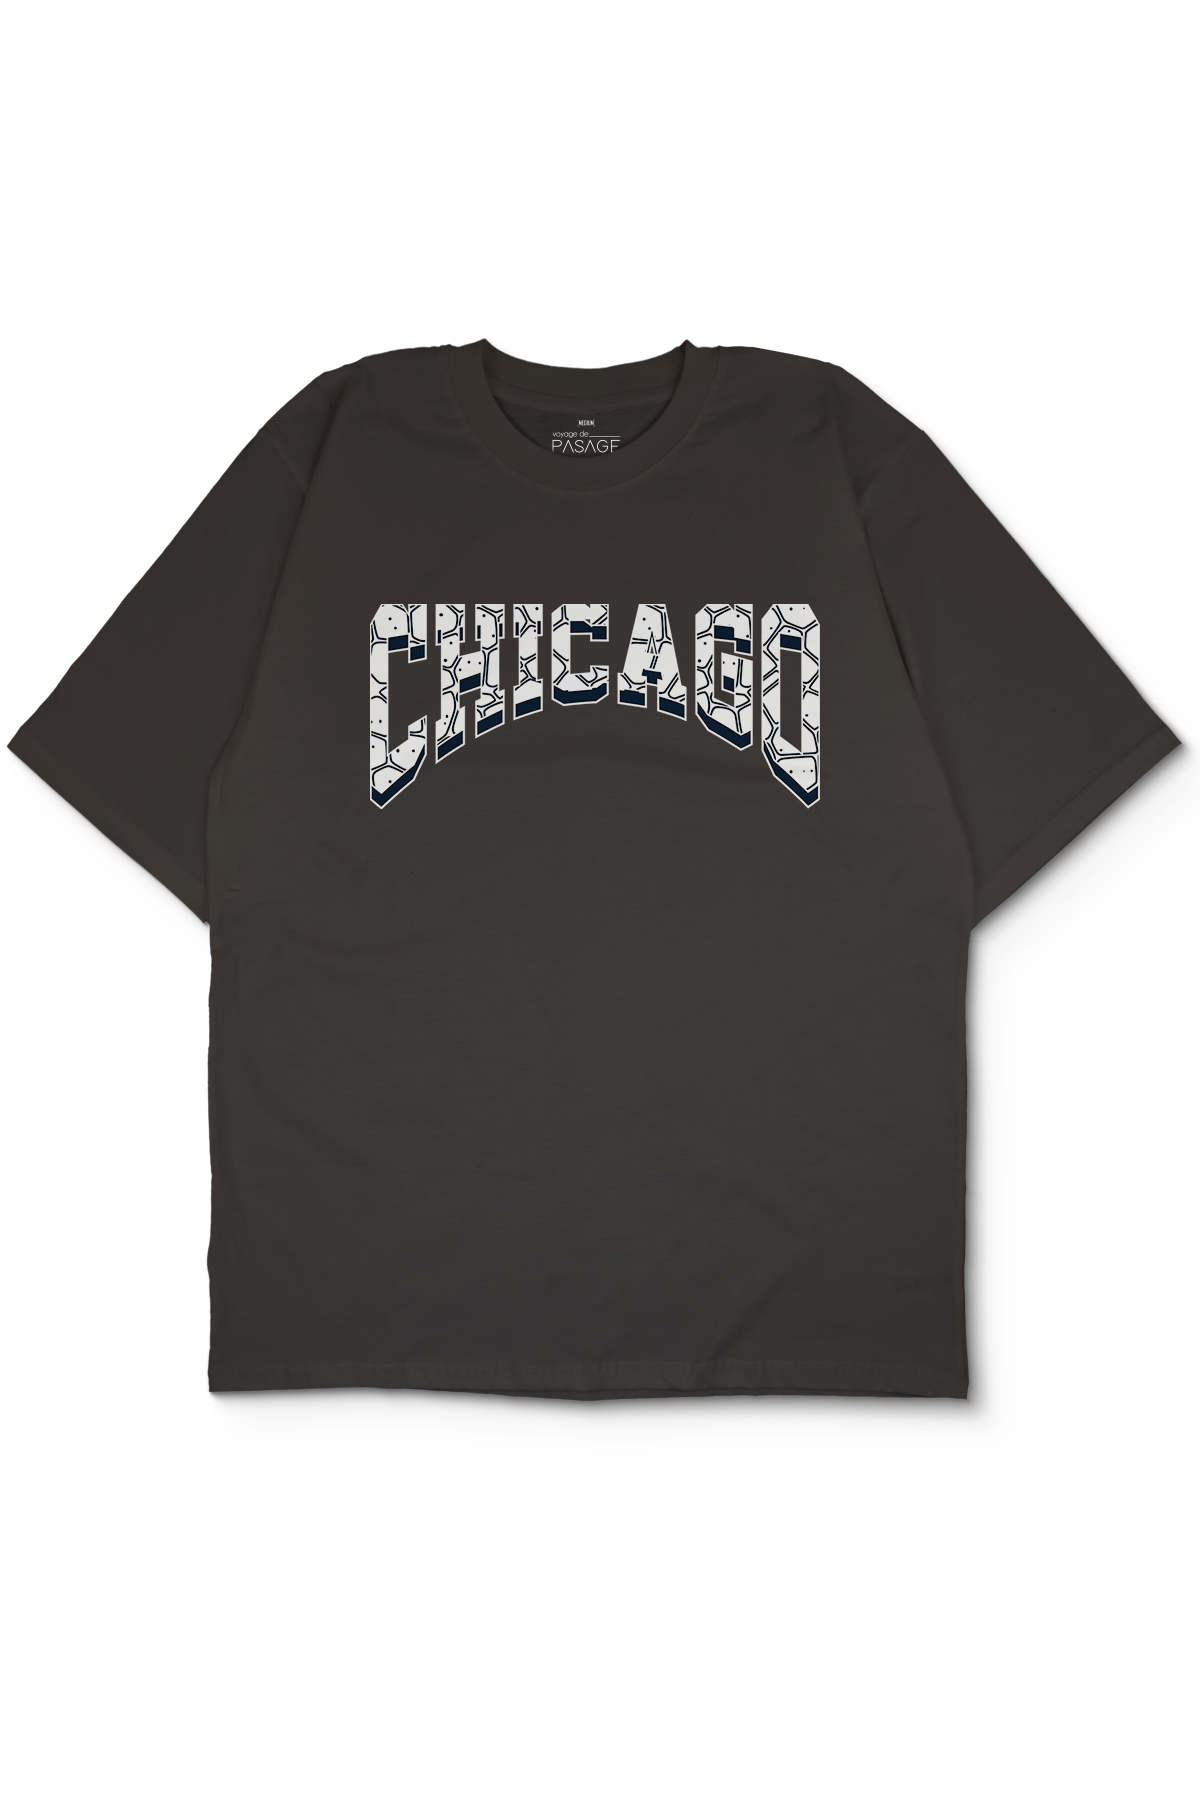 Chicago City Oversize Kadın Tişört